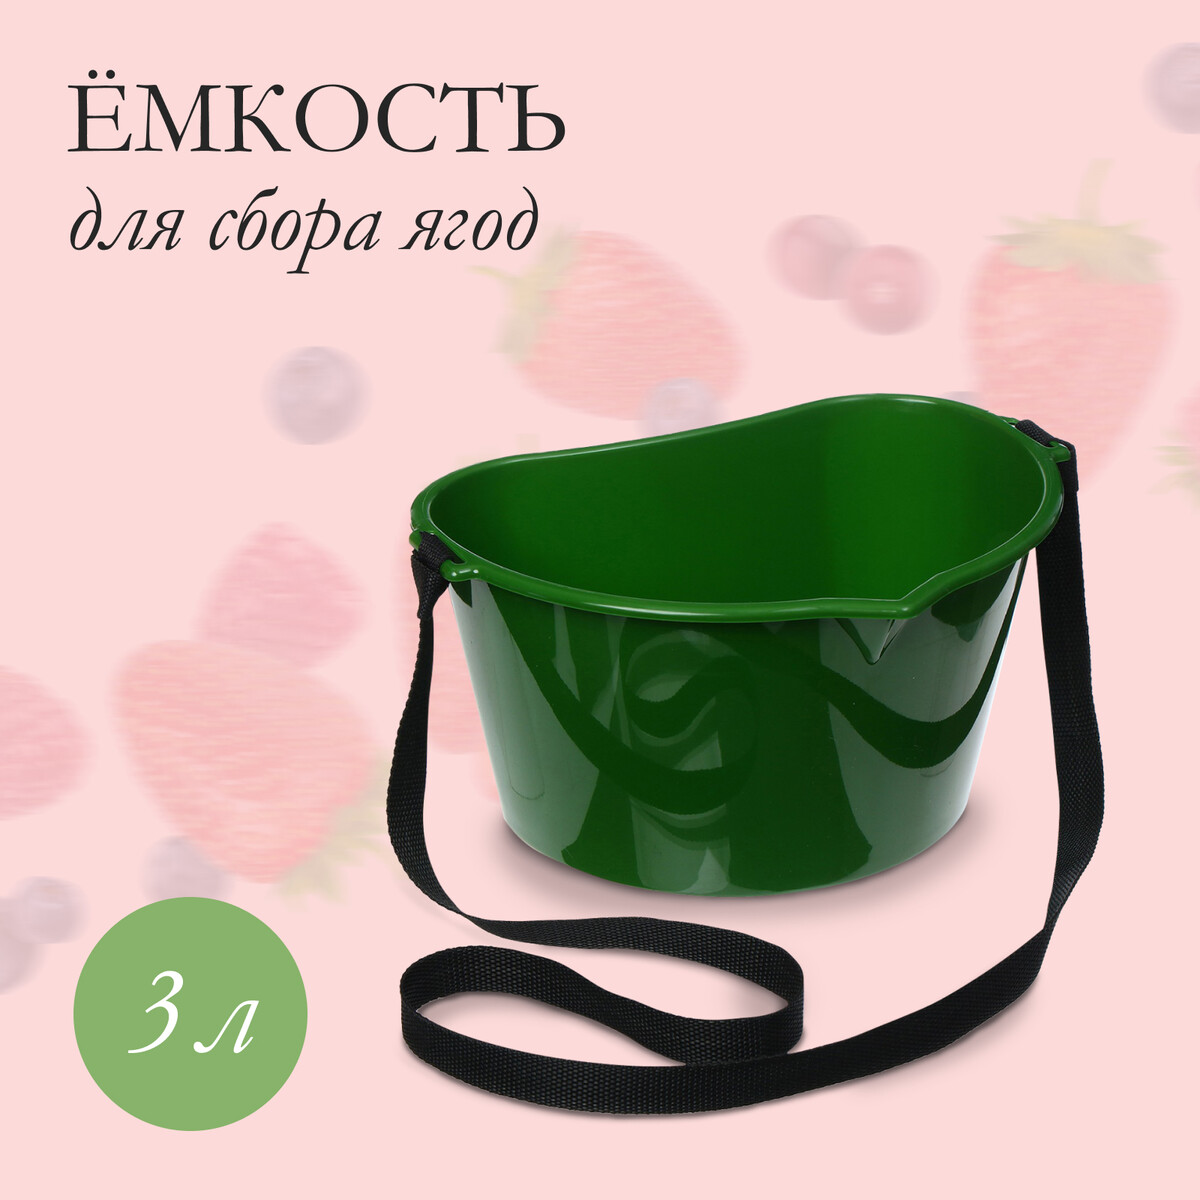 Ёмкость для сбора ягод, 3 л, темно-зеленая кружка с подогревом lsk 1501 от usb 16 вт зеленая